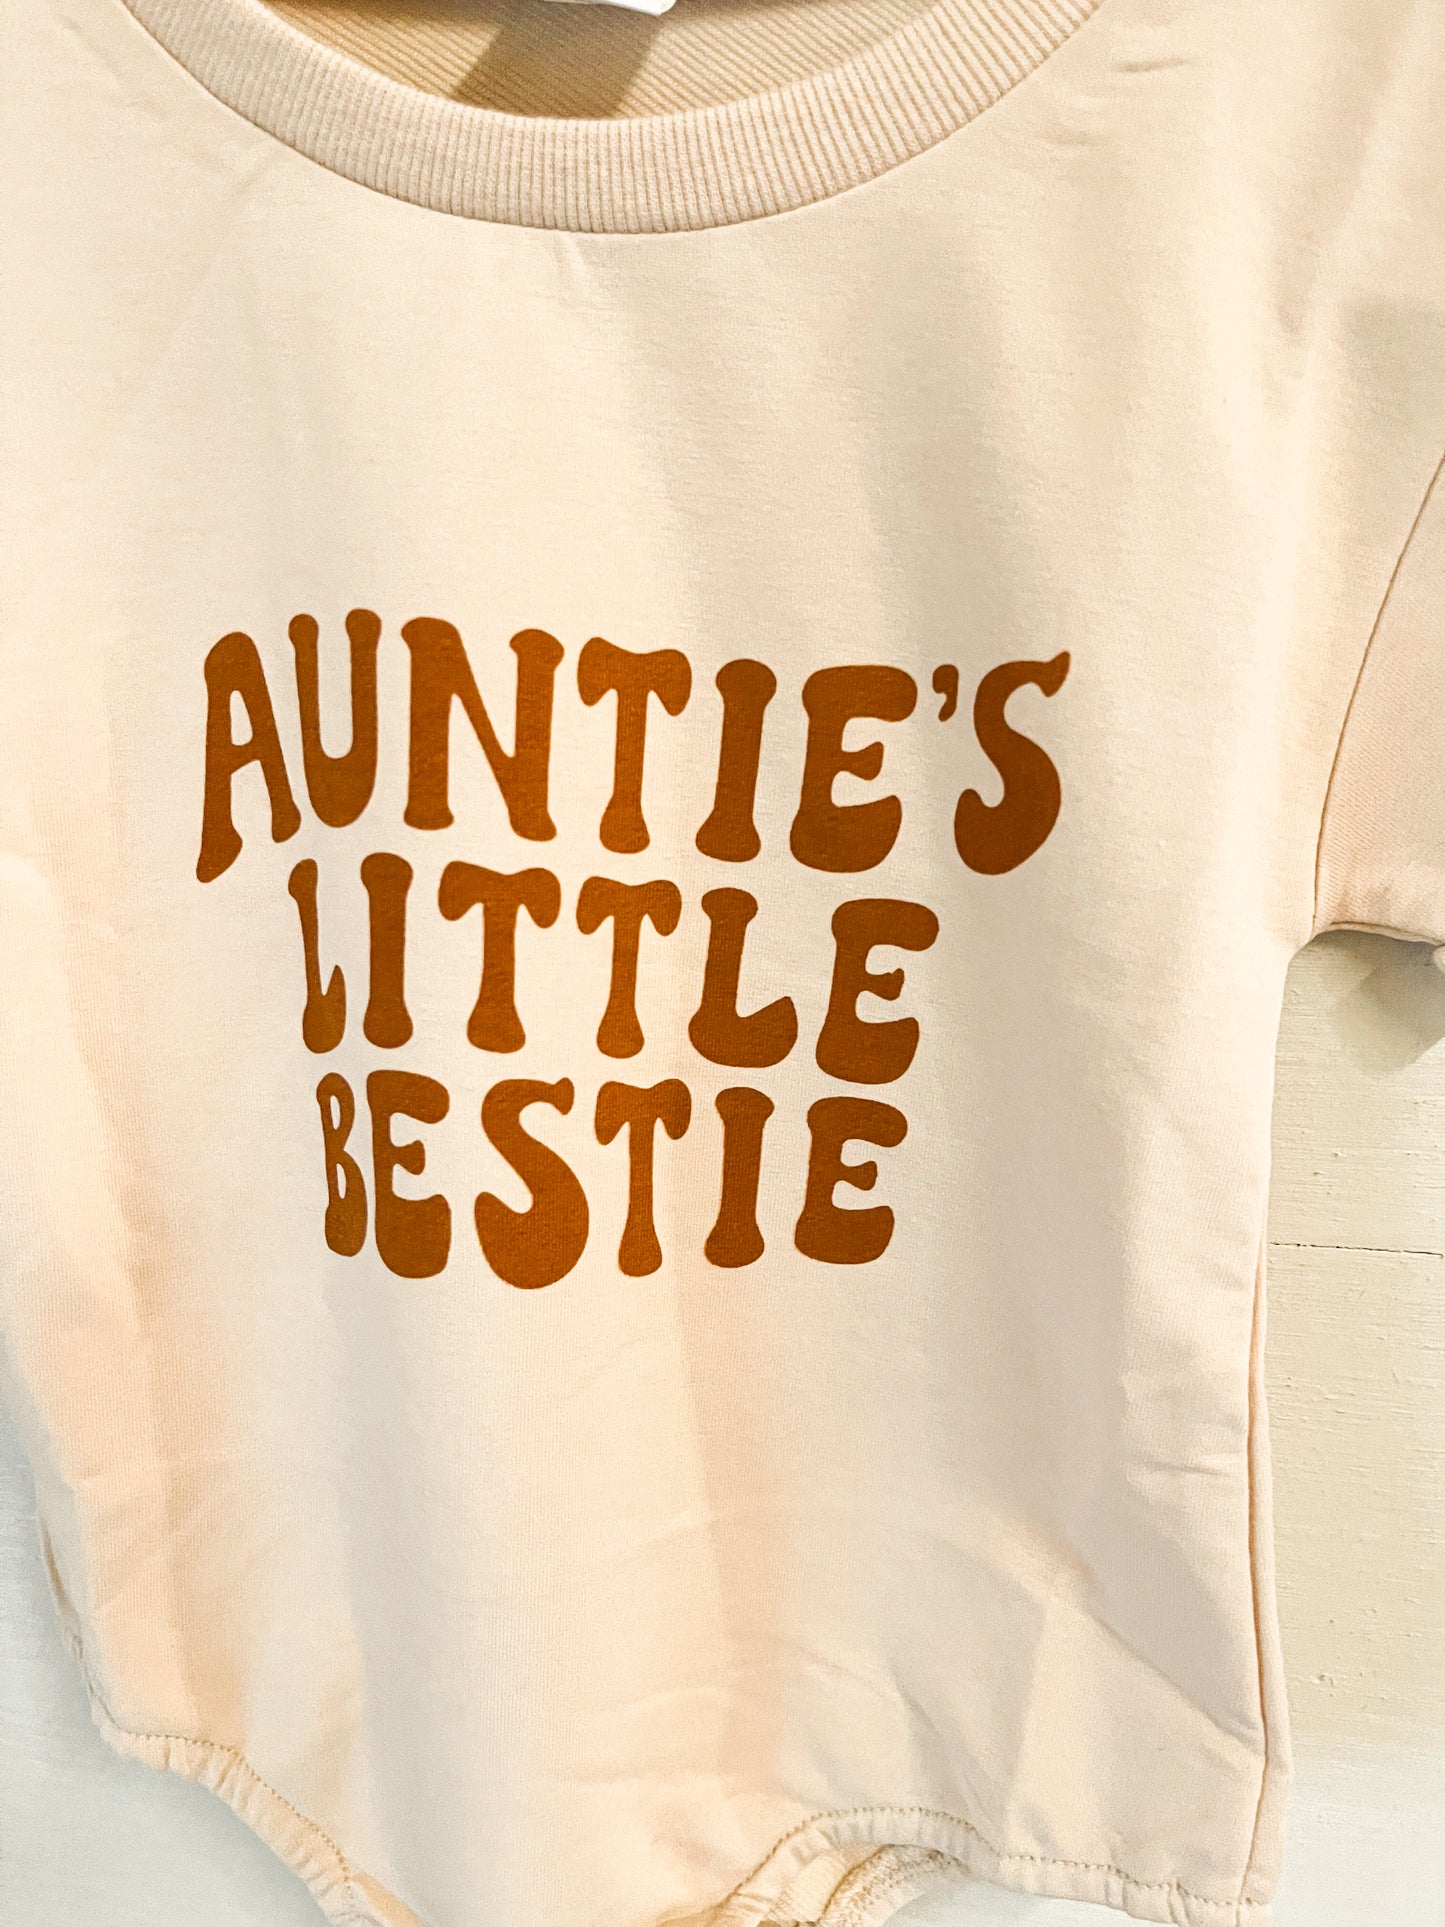 Auntie’s Bestie